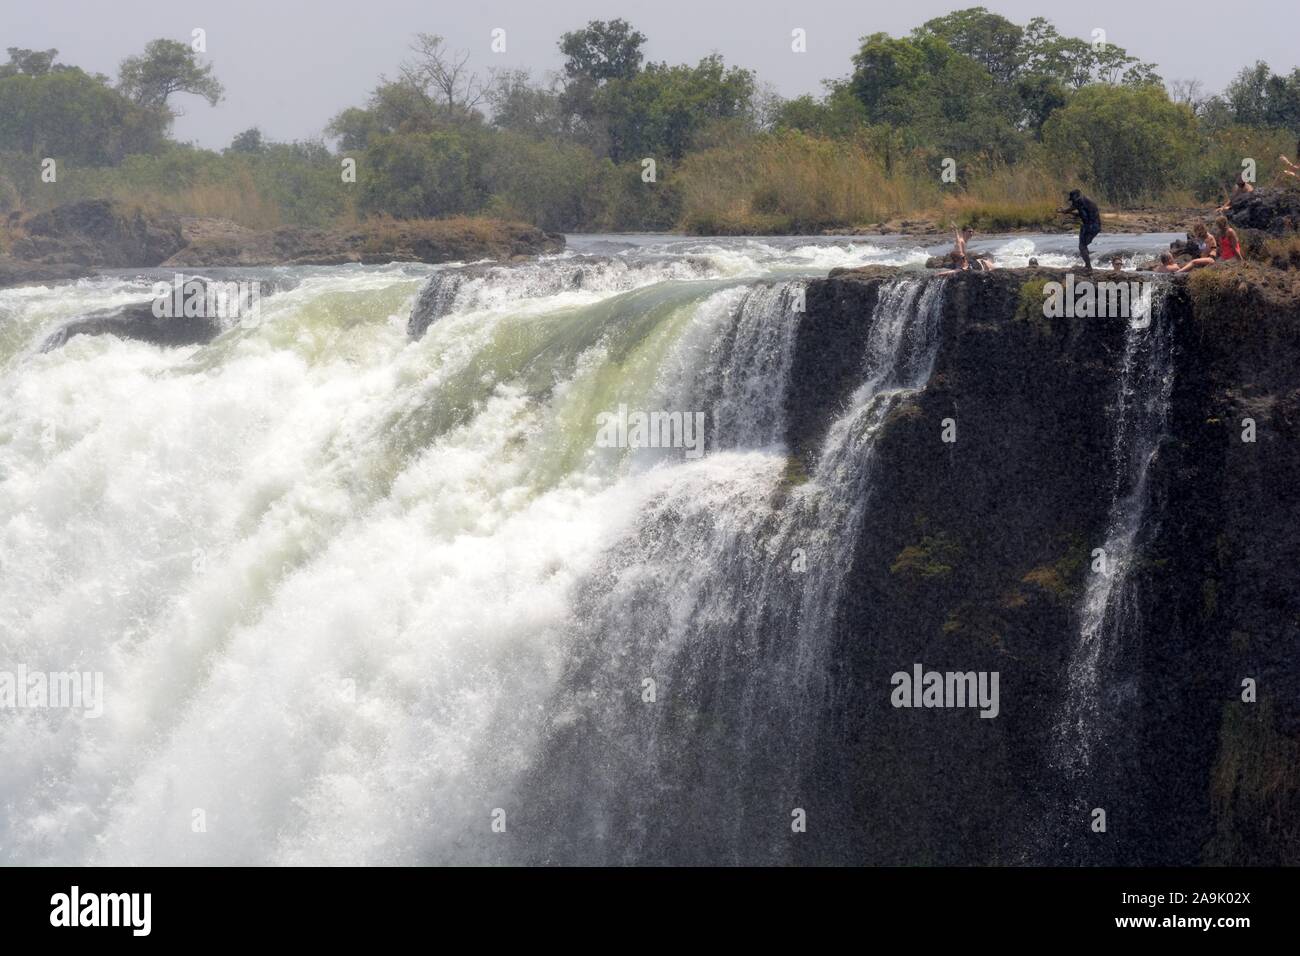 Menschen Touristen schwimmen im Devils Pool am Rand von Victoria Falls Sambia Livingstone Island von der Zimbabwe Seite Afrika ergriffen Stockfoto